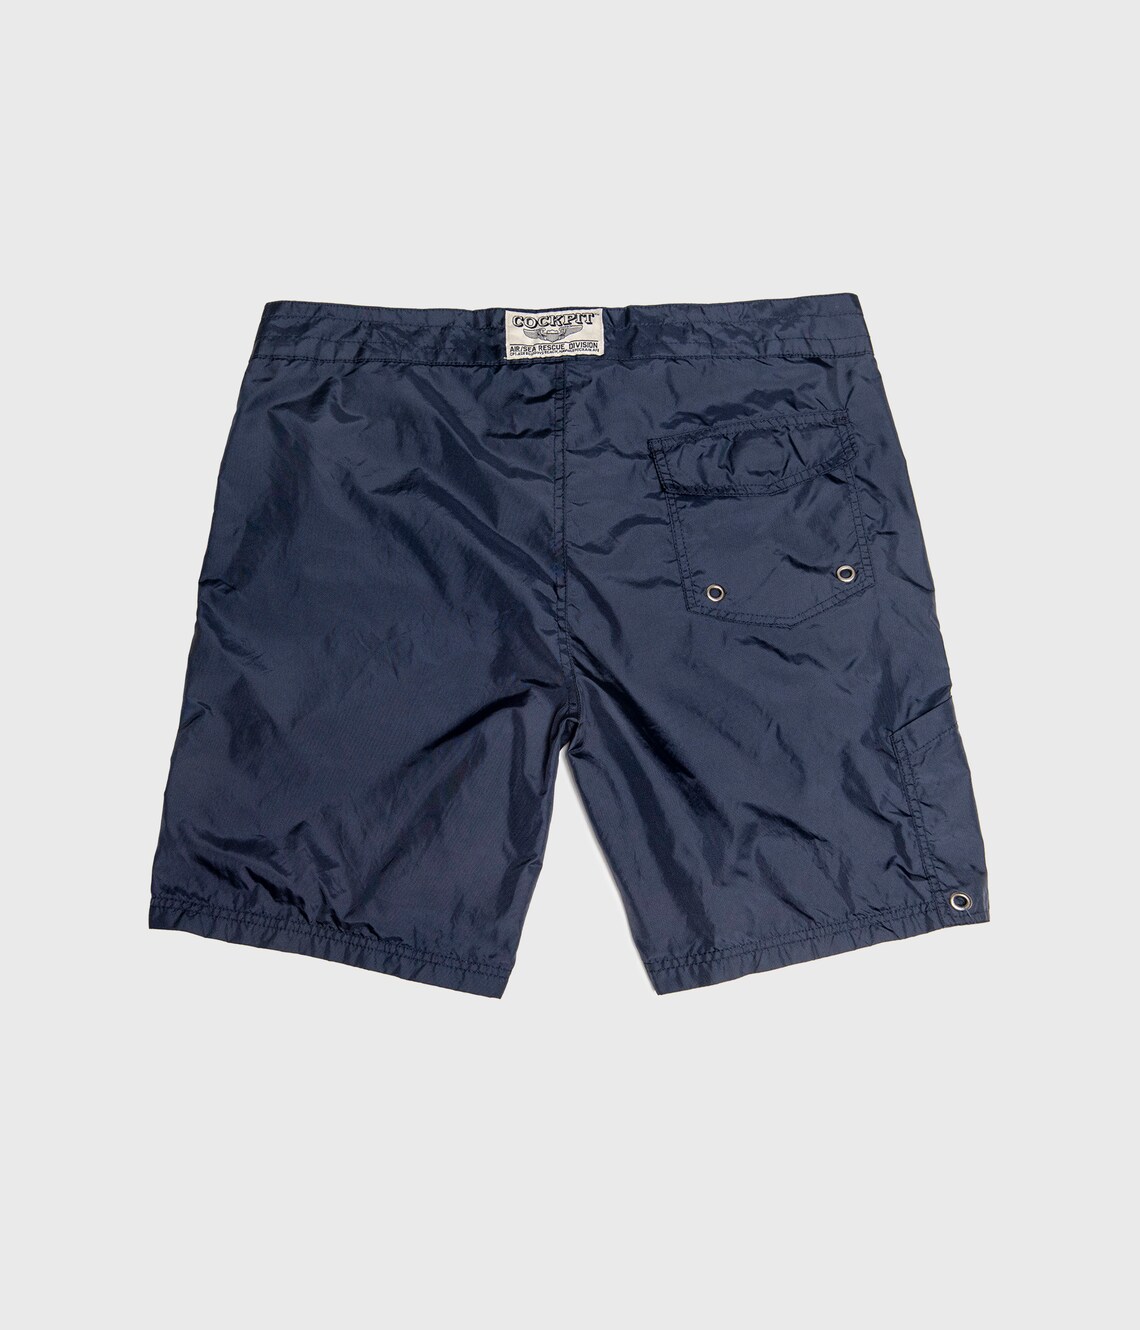 Nylon Surf Shorts / Birdwell Style Navy Blue Shorts / Cockpit | Etsy